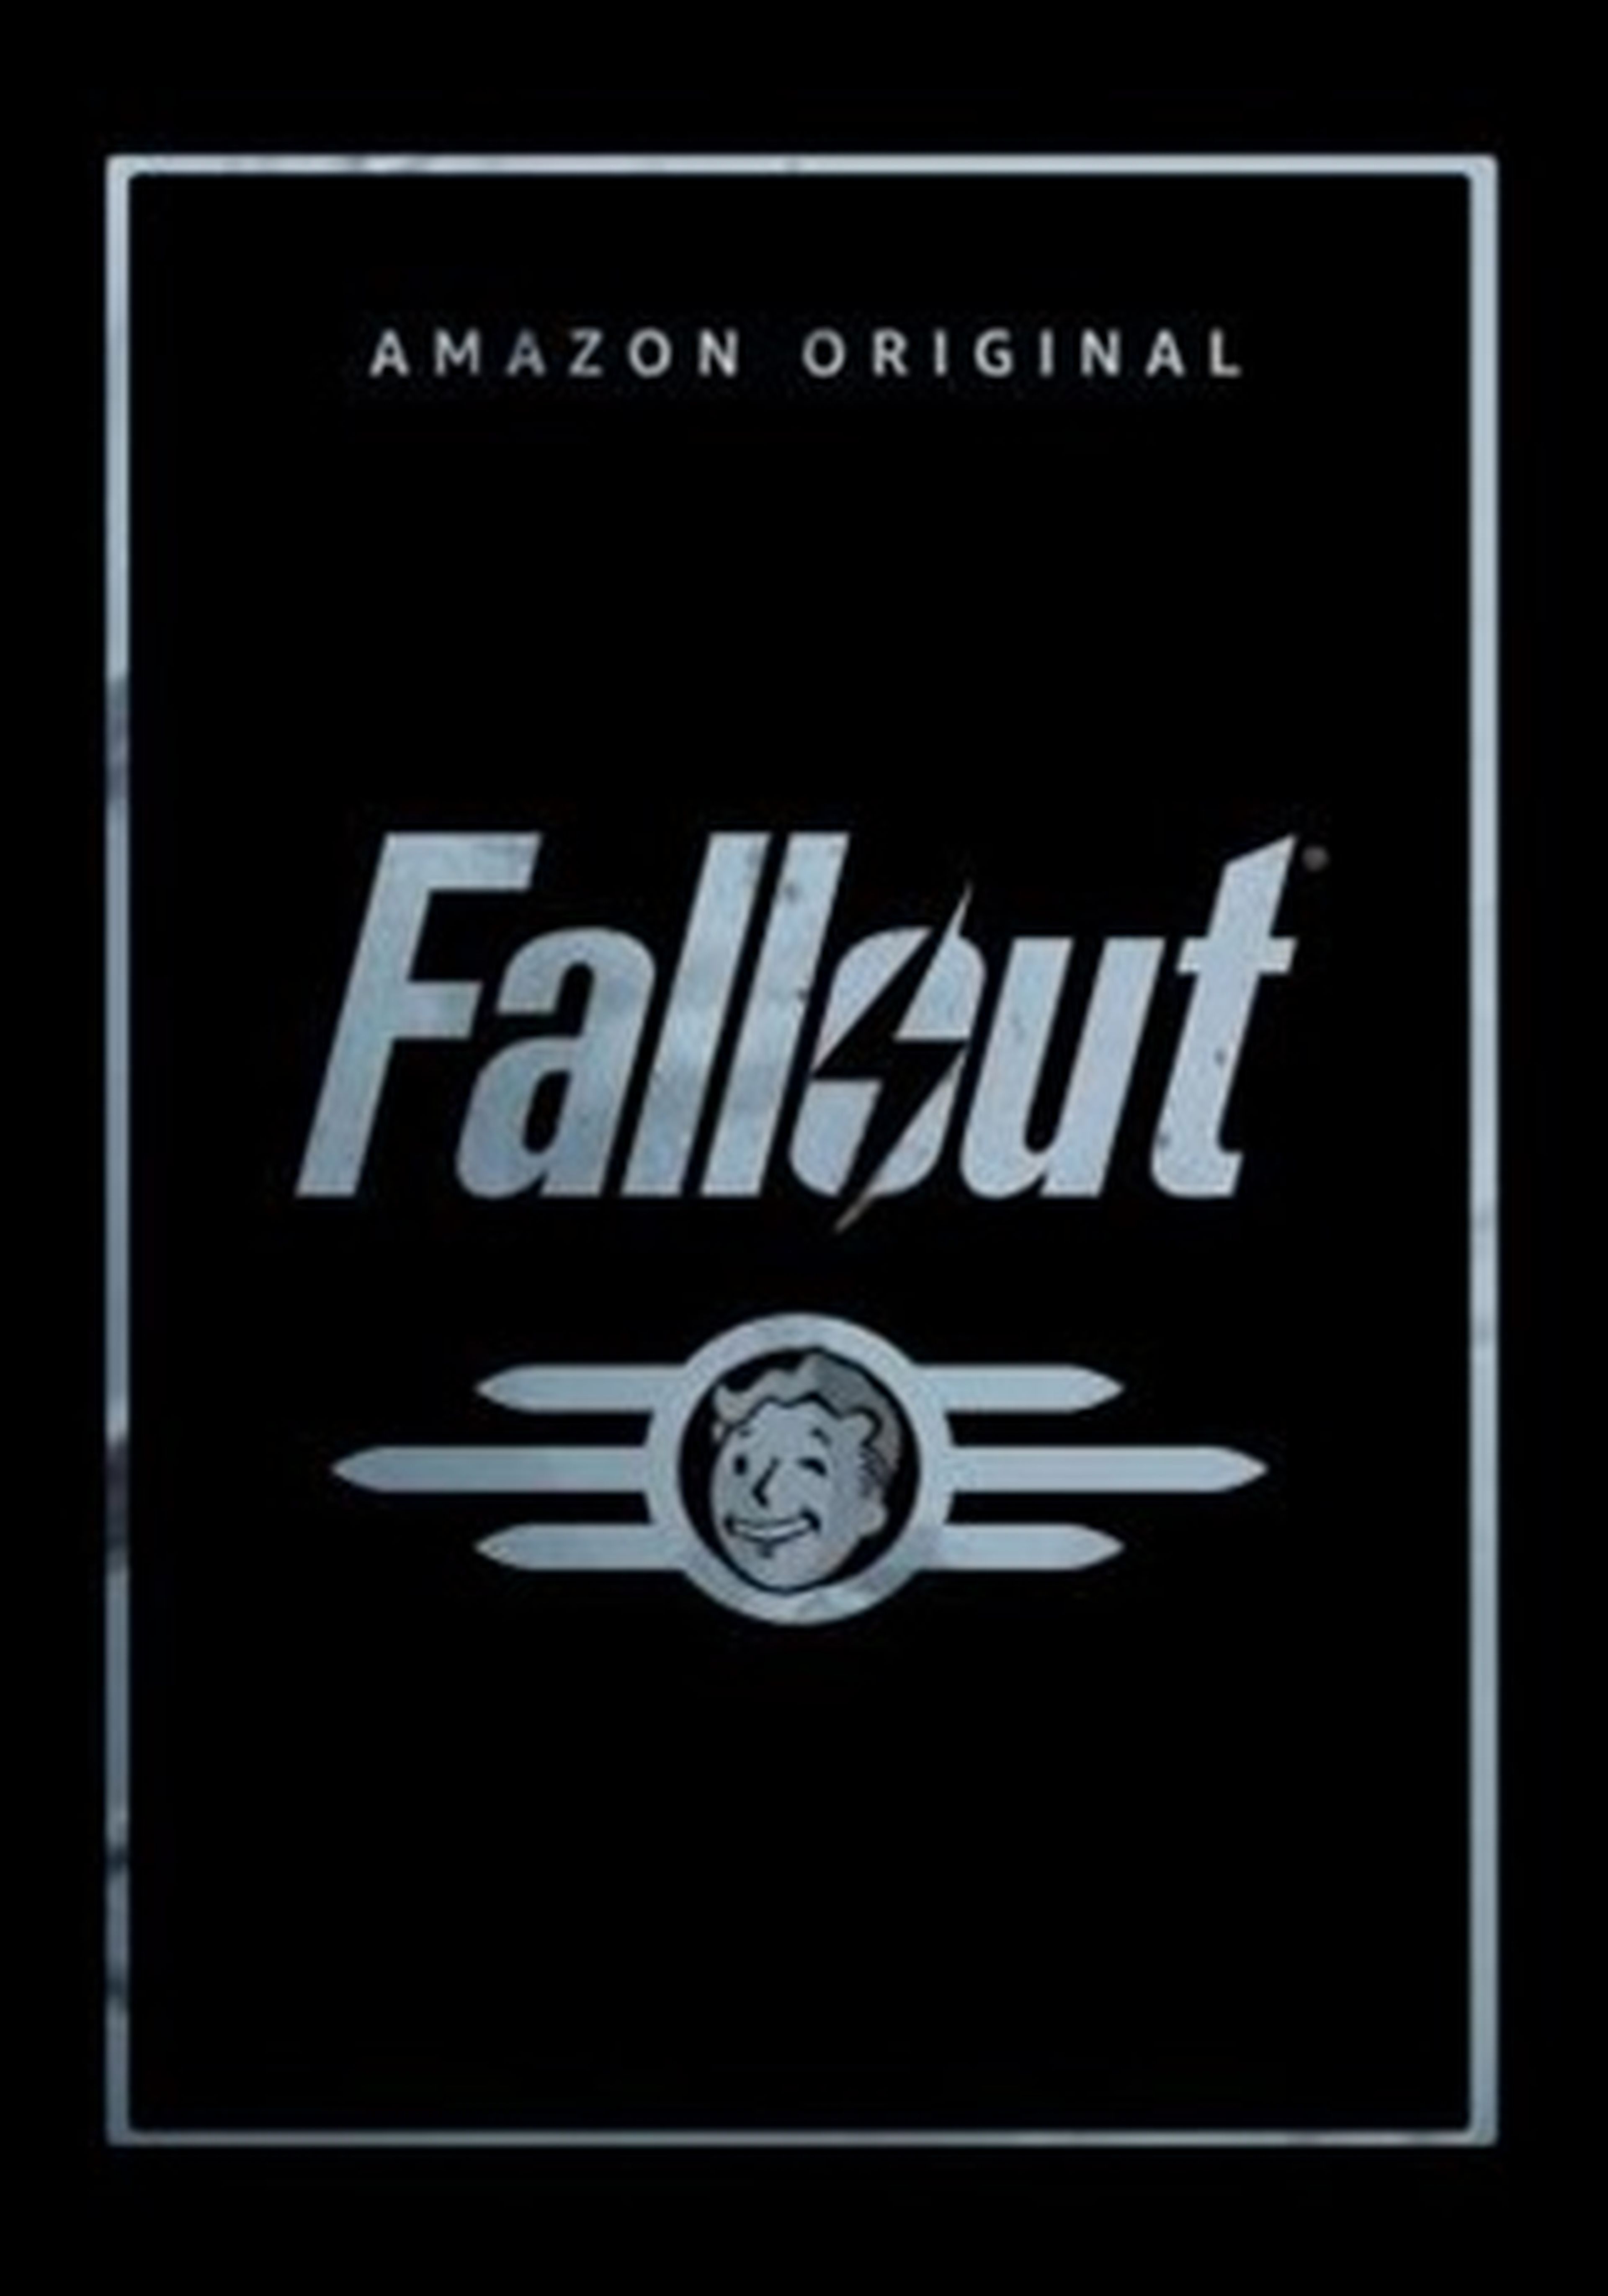 Prime Video lanza un primer vistazo de Fallout, la serie basada en la